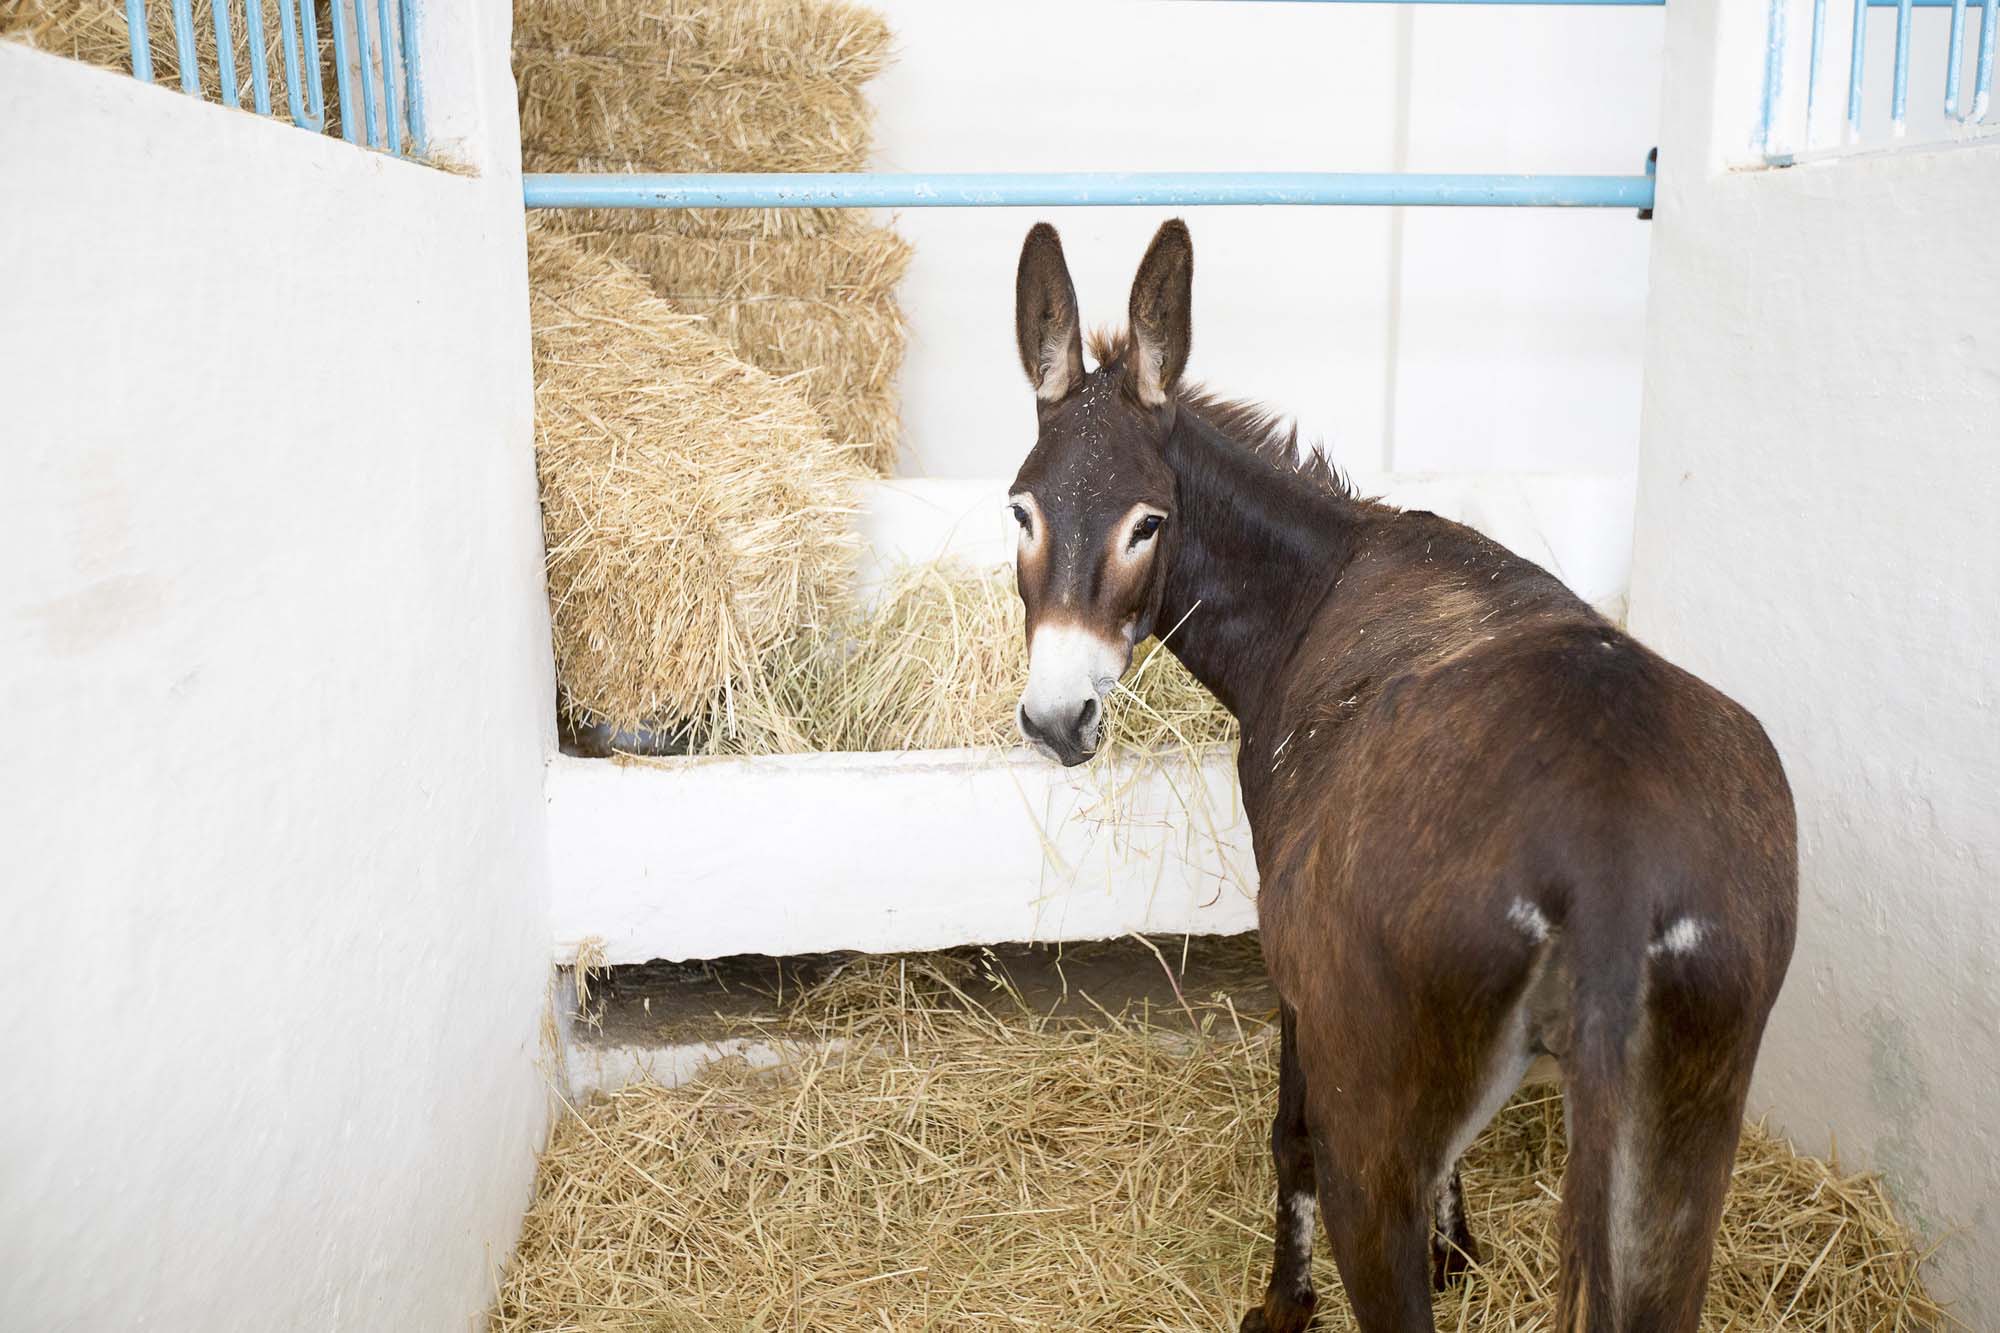 brown-donkey-eating-hay.jpg